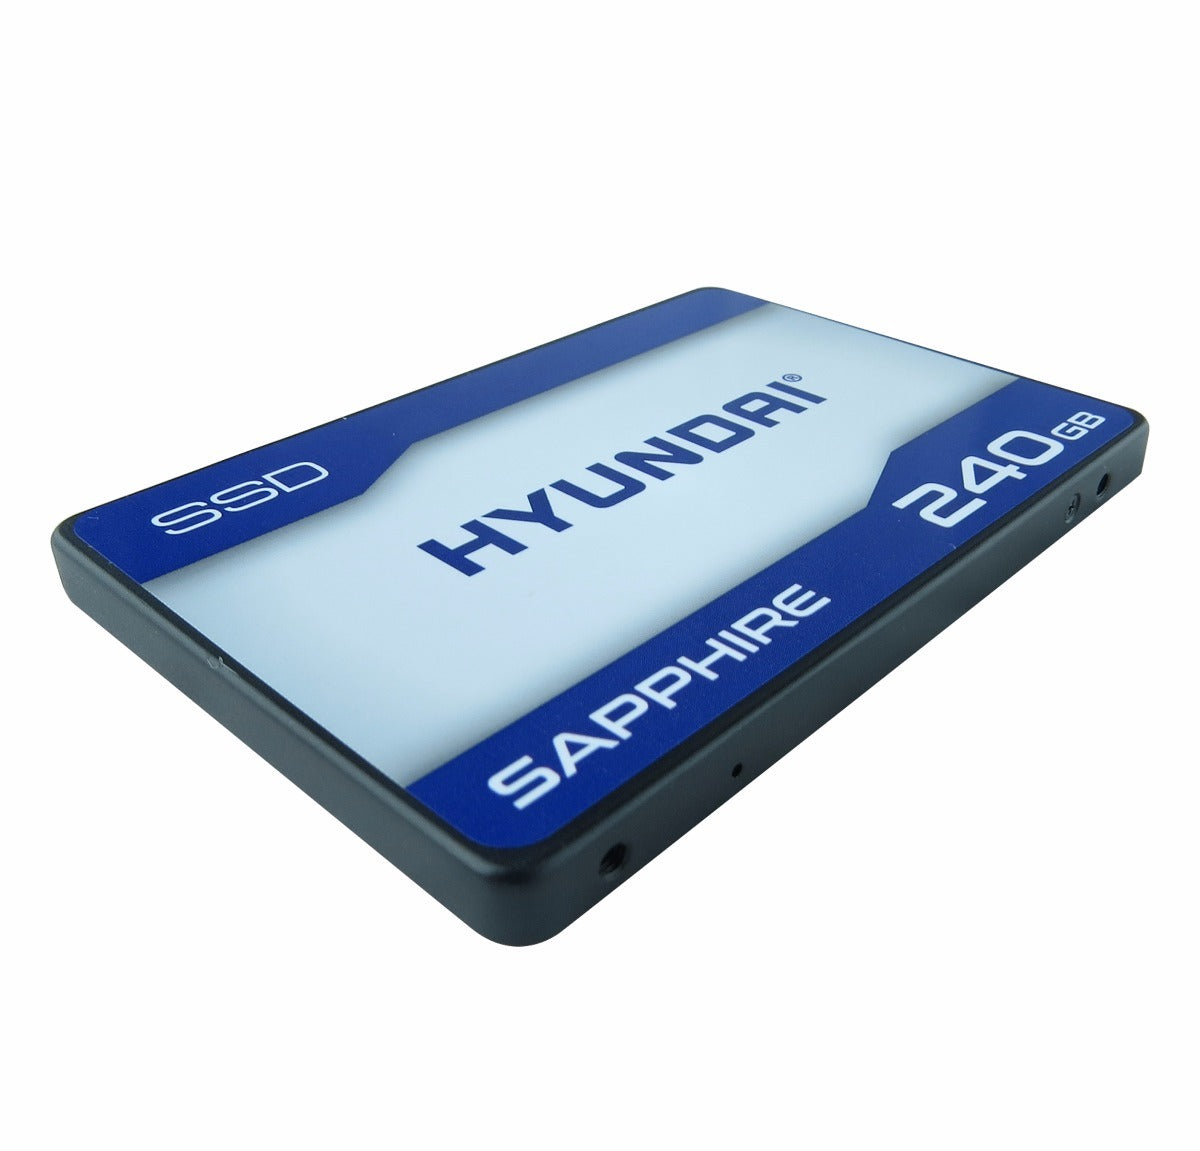 SSD HYUNDAI C2S3T/240G, 240 GB, Serial ATA III, 500 MB/s, 400 MB/s, 6 Gbit/s